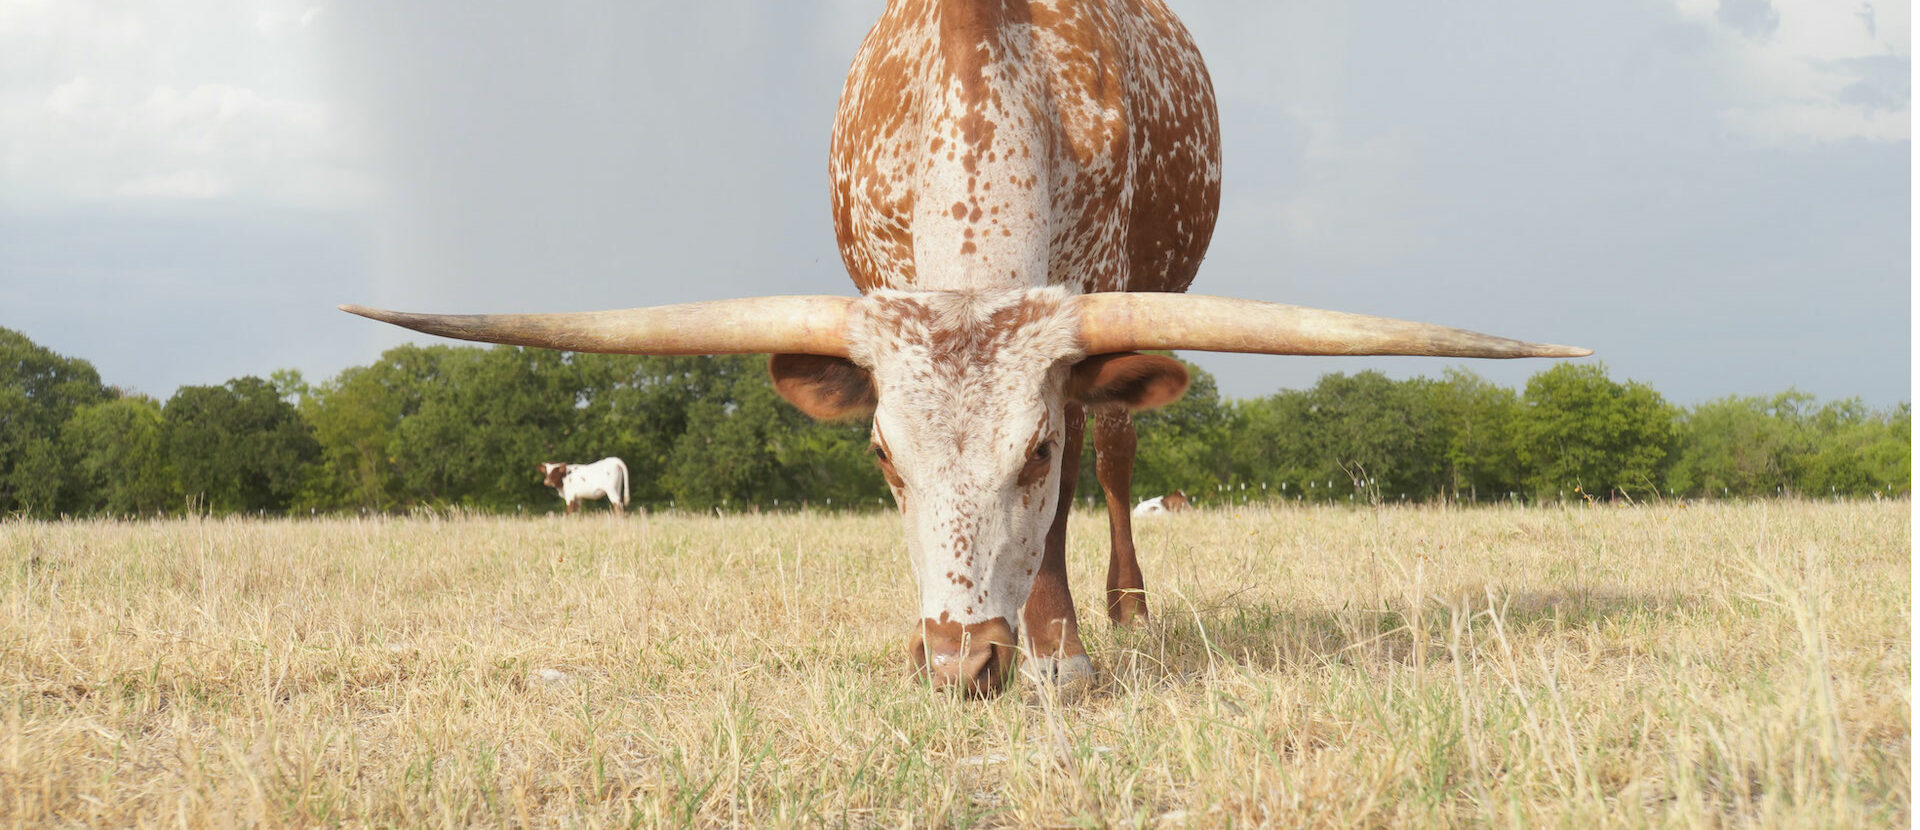 Longhorn Cattle grazing in Texas field